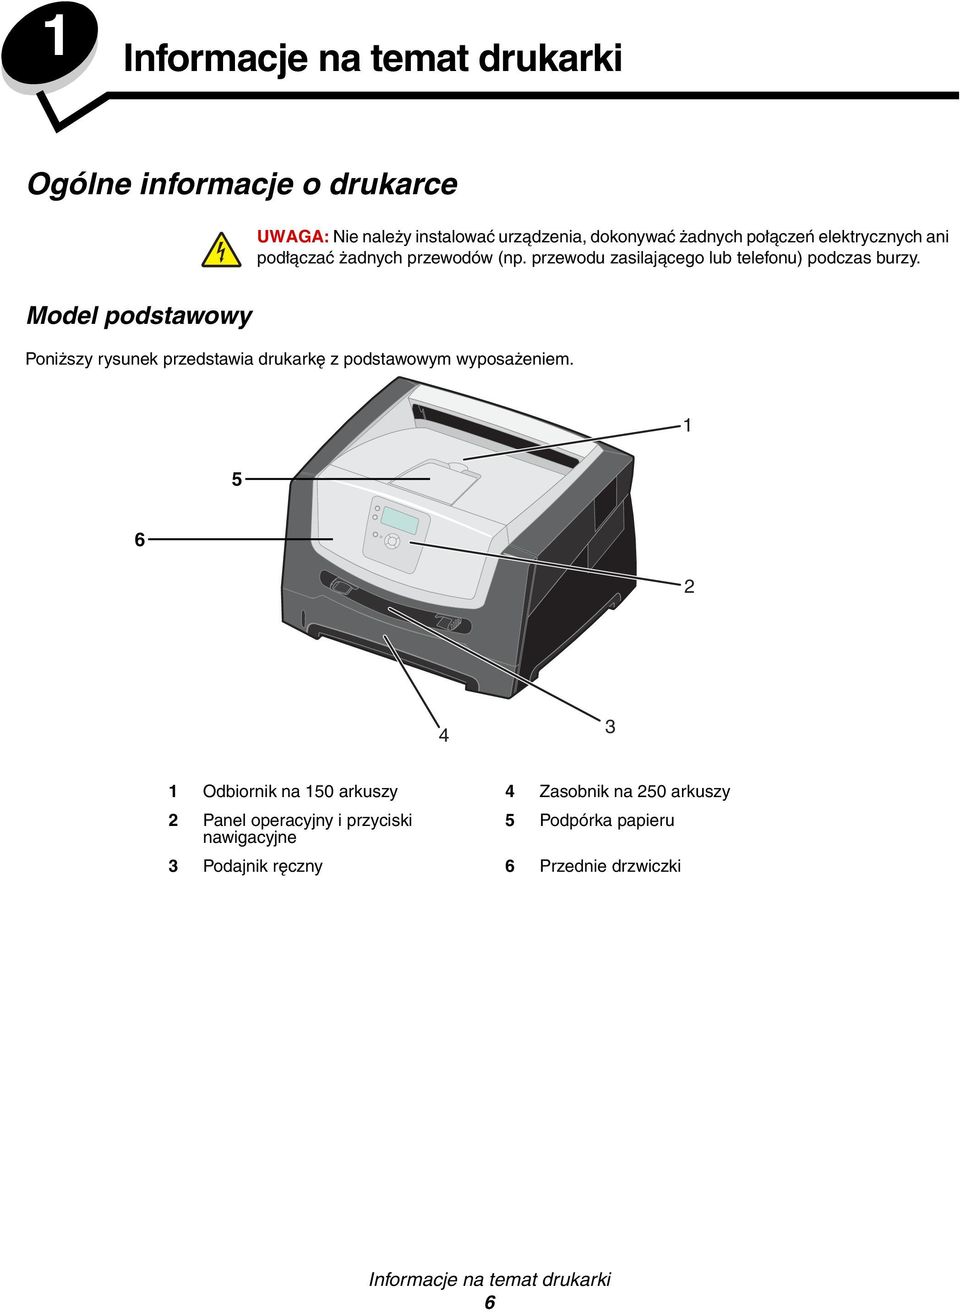 Model podstawowy Poniższy rysunek przedstawia drukarkę z podstawowym wyposażeniem.